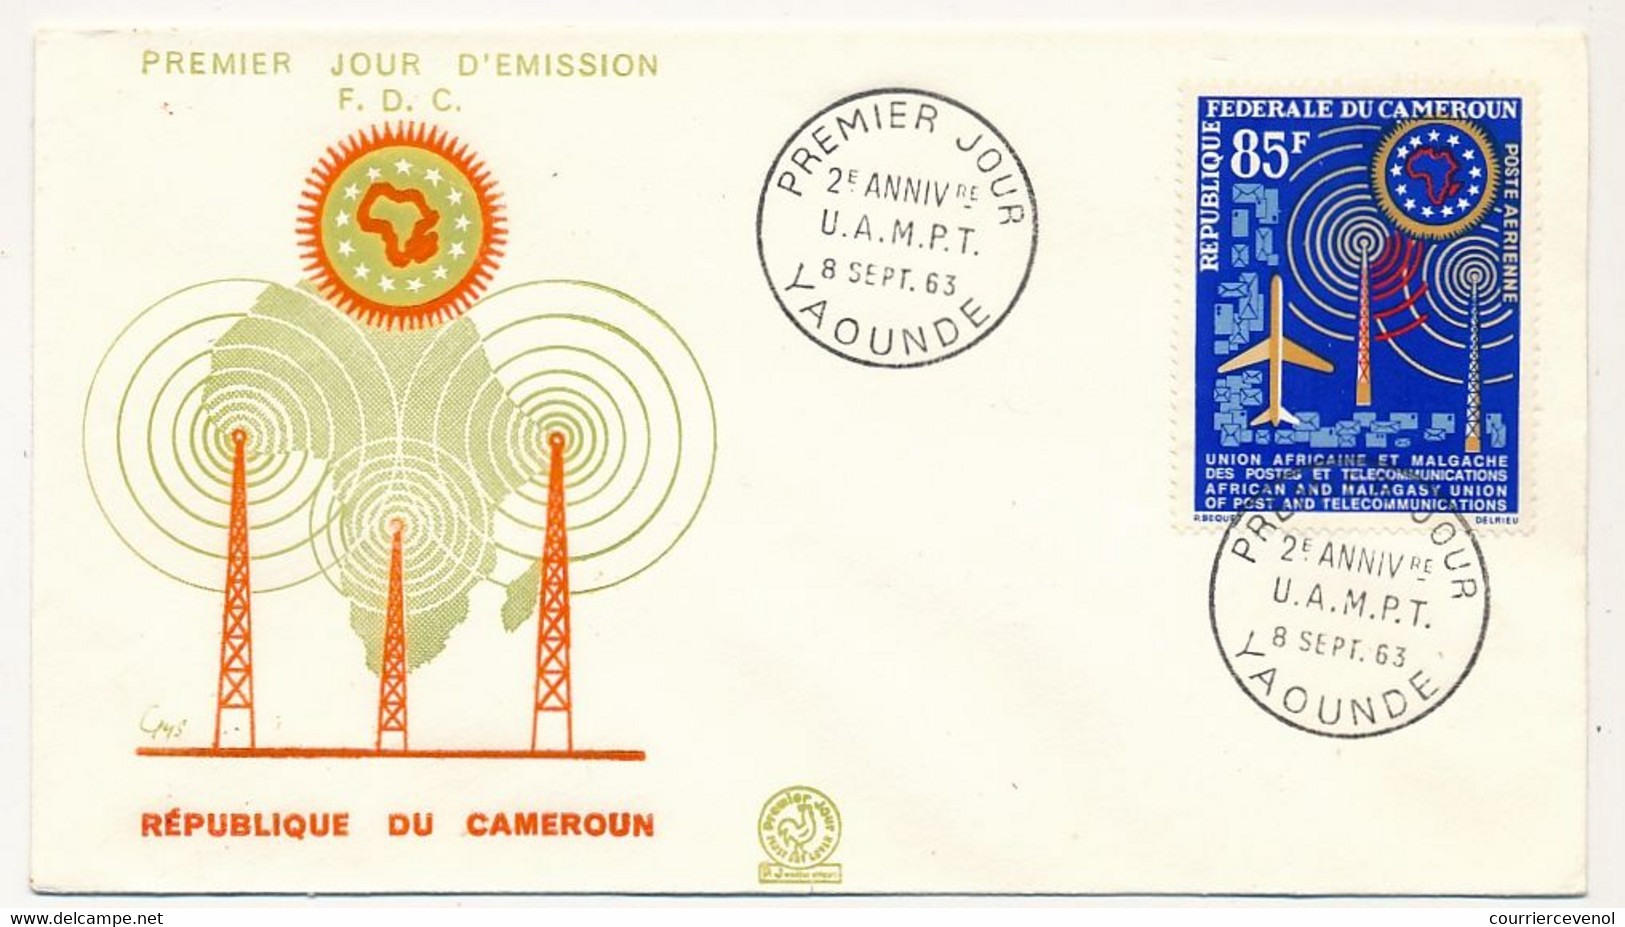 CAMEROUN => Enveloppe FDC - 85F 2eme Anniversaire UAMPT - 8 Sept 1983 - Yaoundé - Kamerun (1960-...)